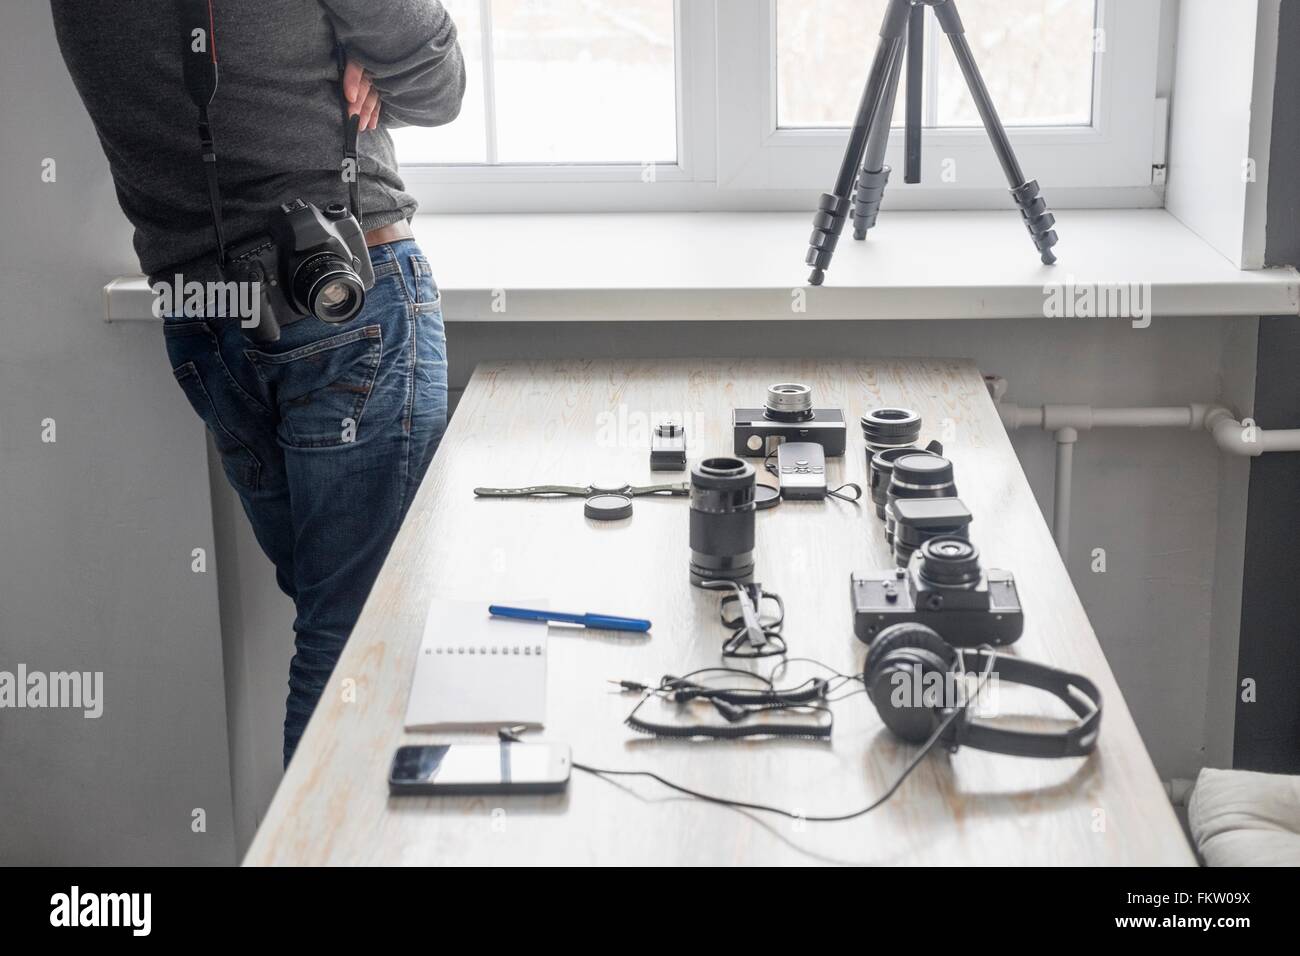 Männlichen Fotografen neben Fotoausrüstung auf Atelier Schreibtisch Stockfoto